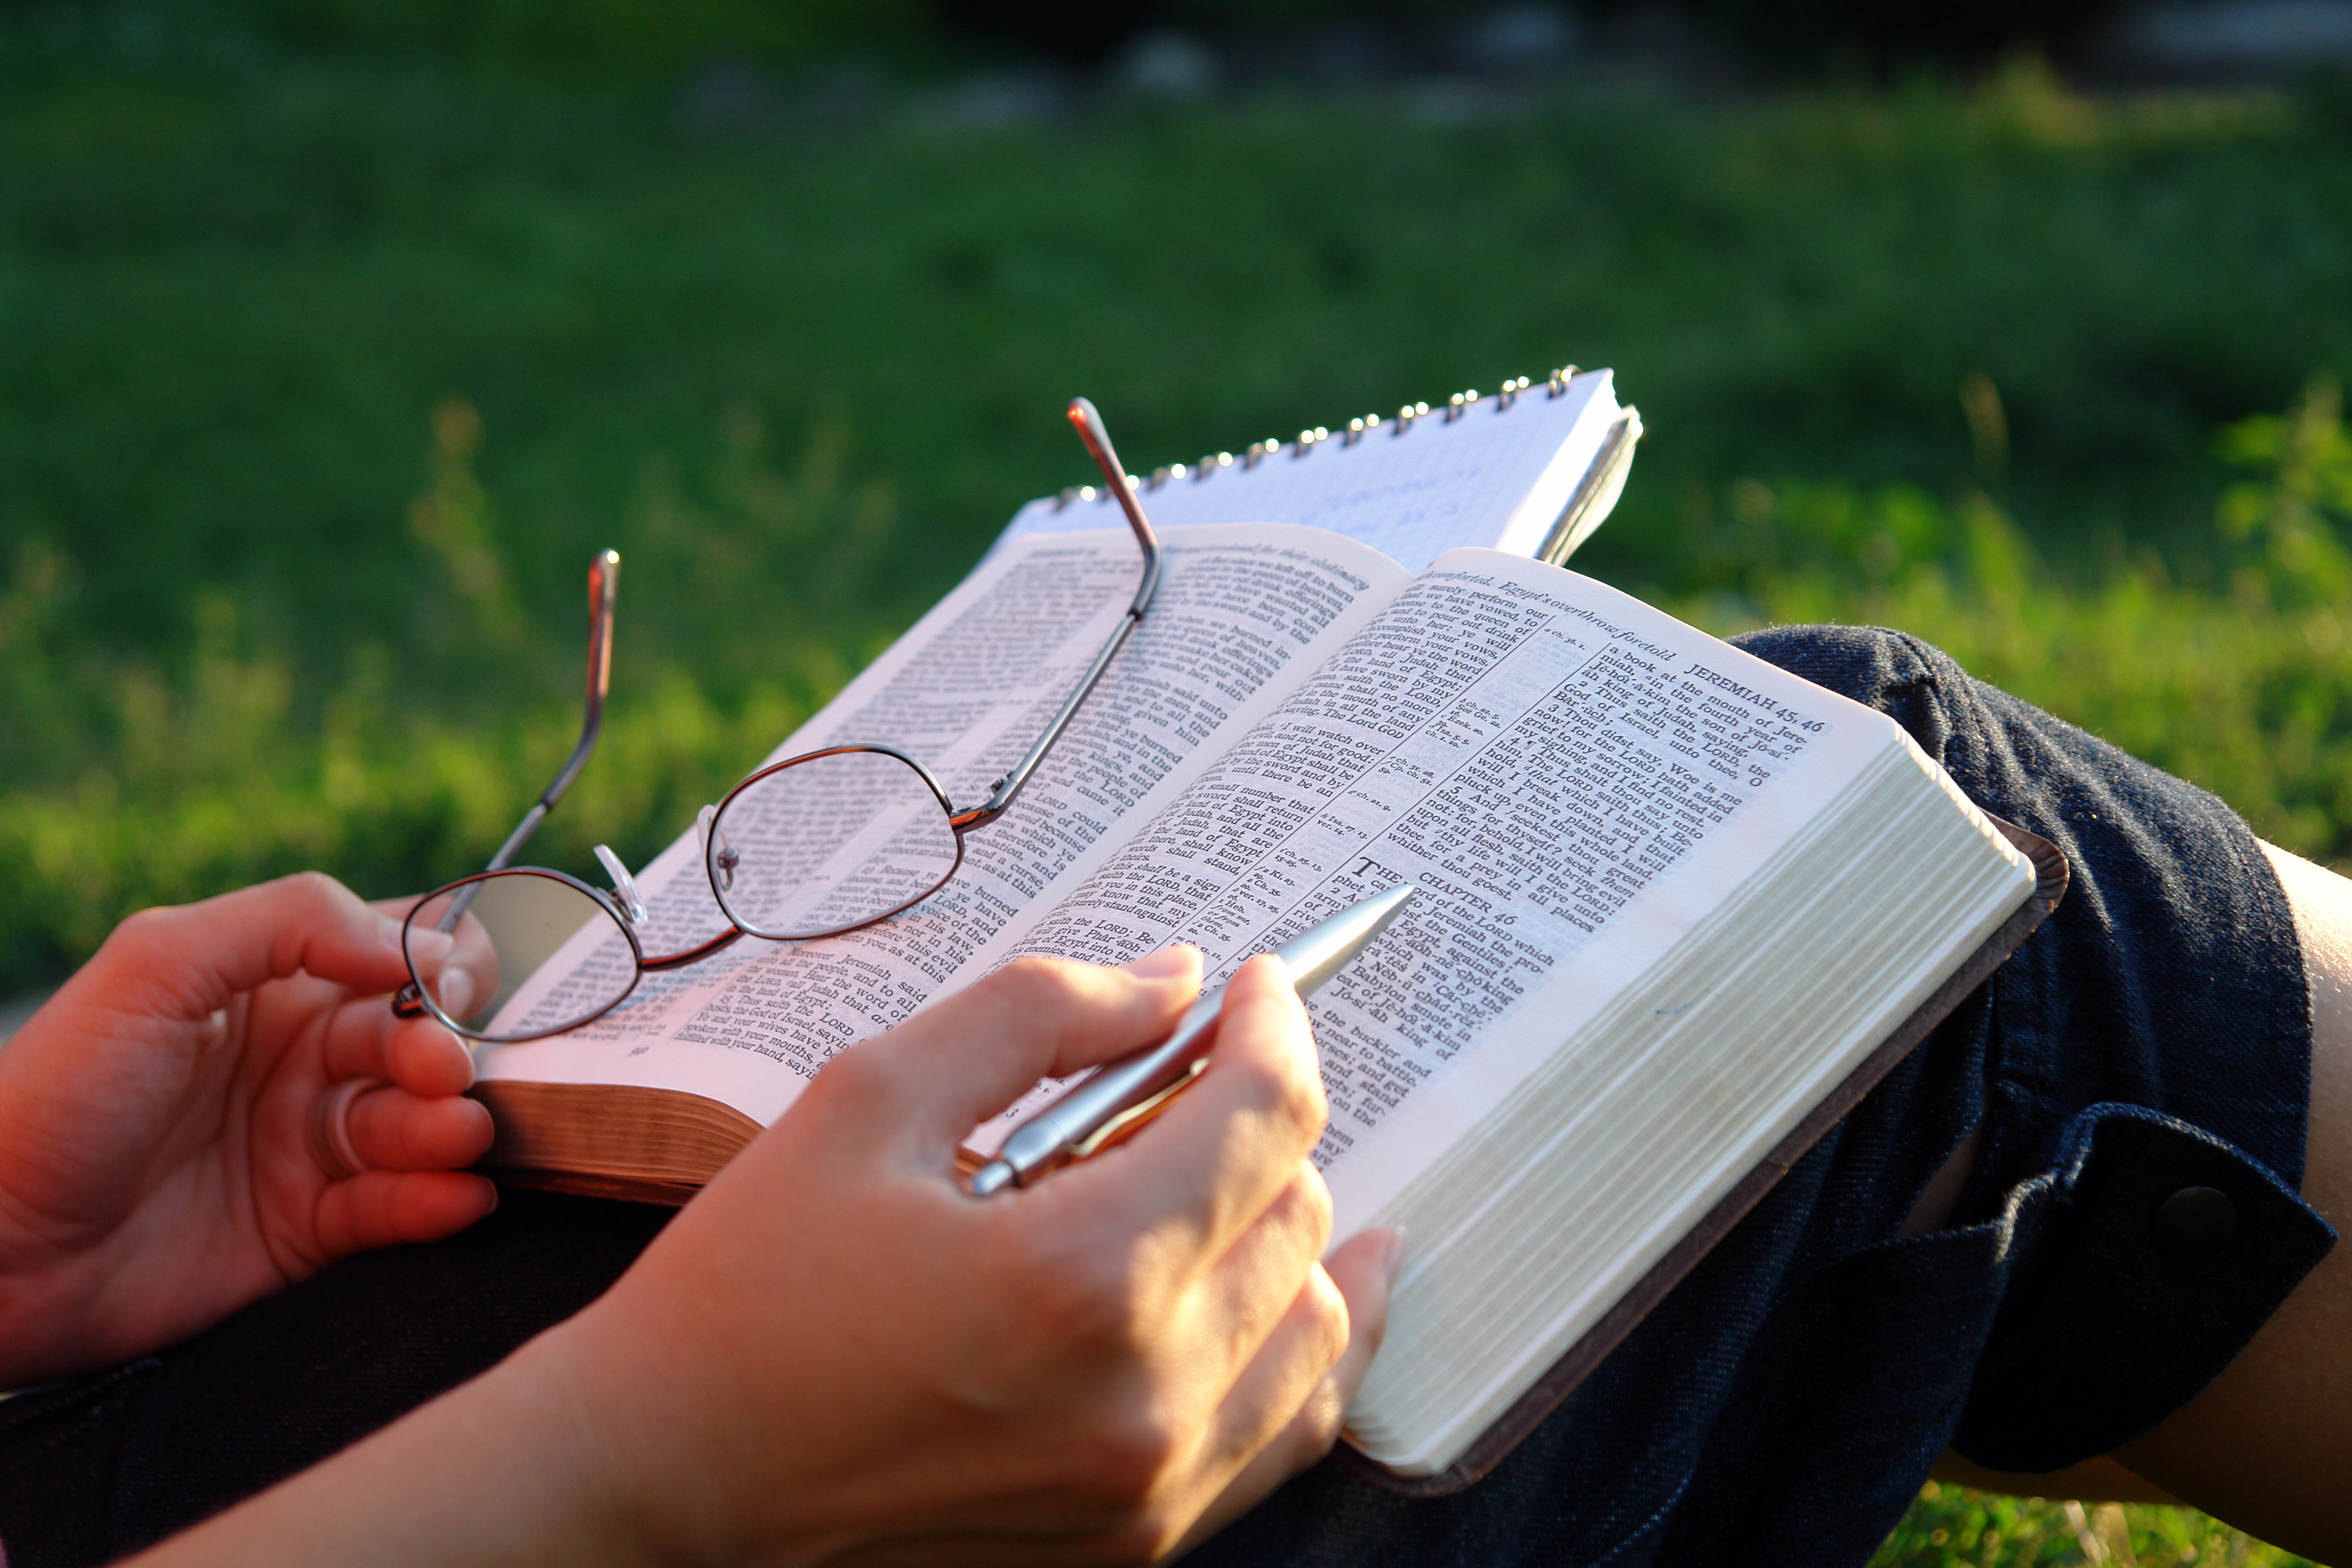 Размышления pdf. Библия в руках. Человек читает Библию. Чтение Библии на природе. Человек с Библией на природе.